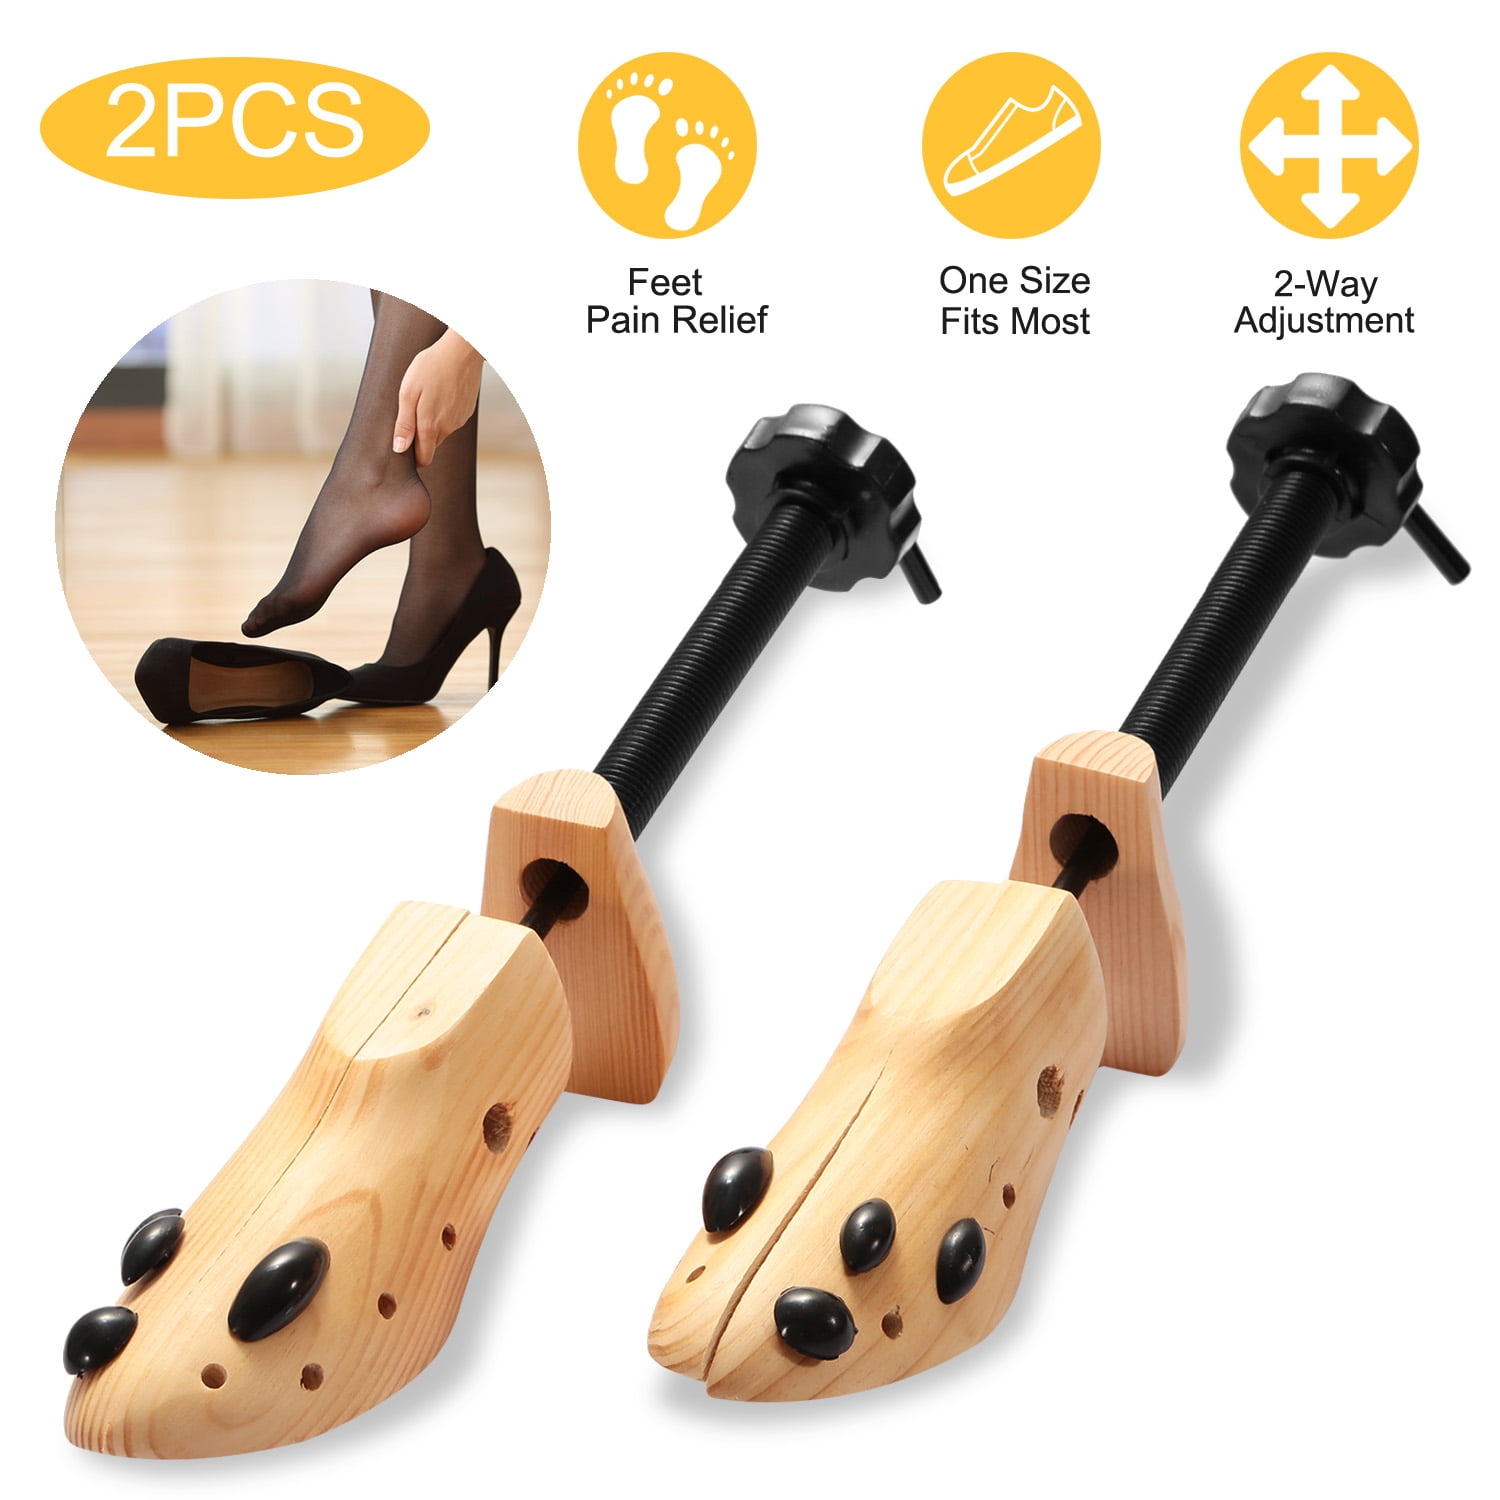 2Pcs Adjustable Way Shoe Stretcher Maintain Shape Shoes Tree Men/Women Size 